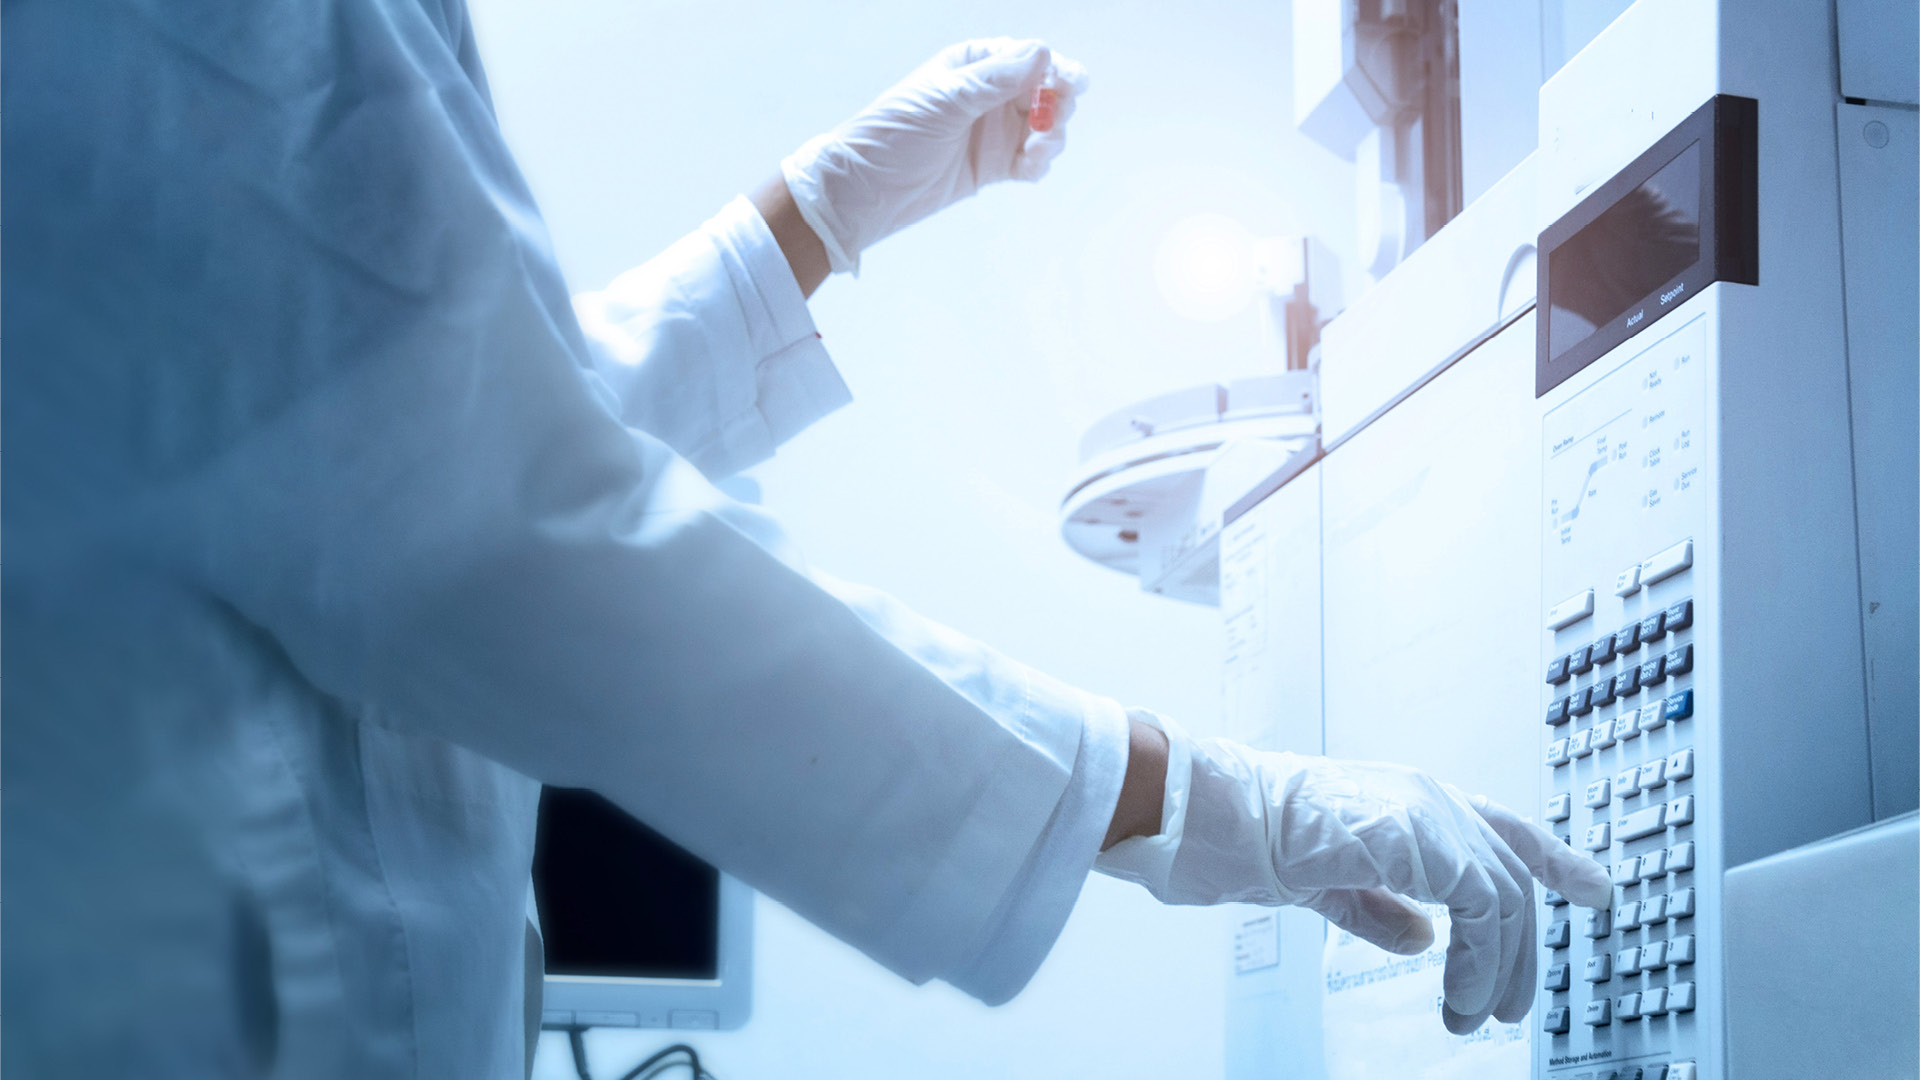 Ein Wissenschaftler hält ein bernsteinfarbenes Fläschchen in der Hand und drückt den Kontrollknopf der GC-Chromatographie.